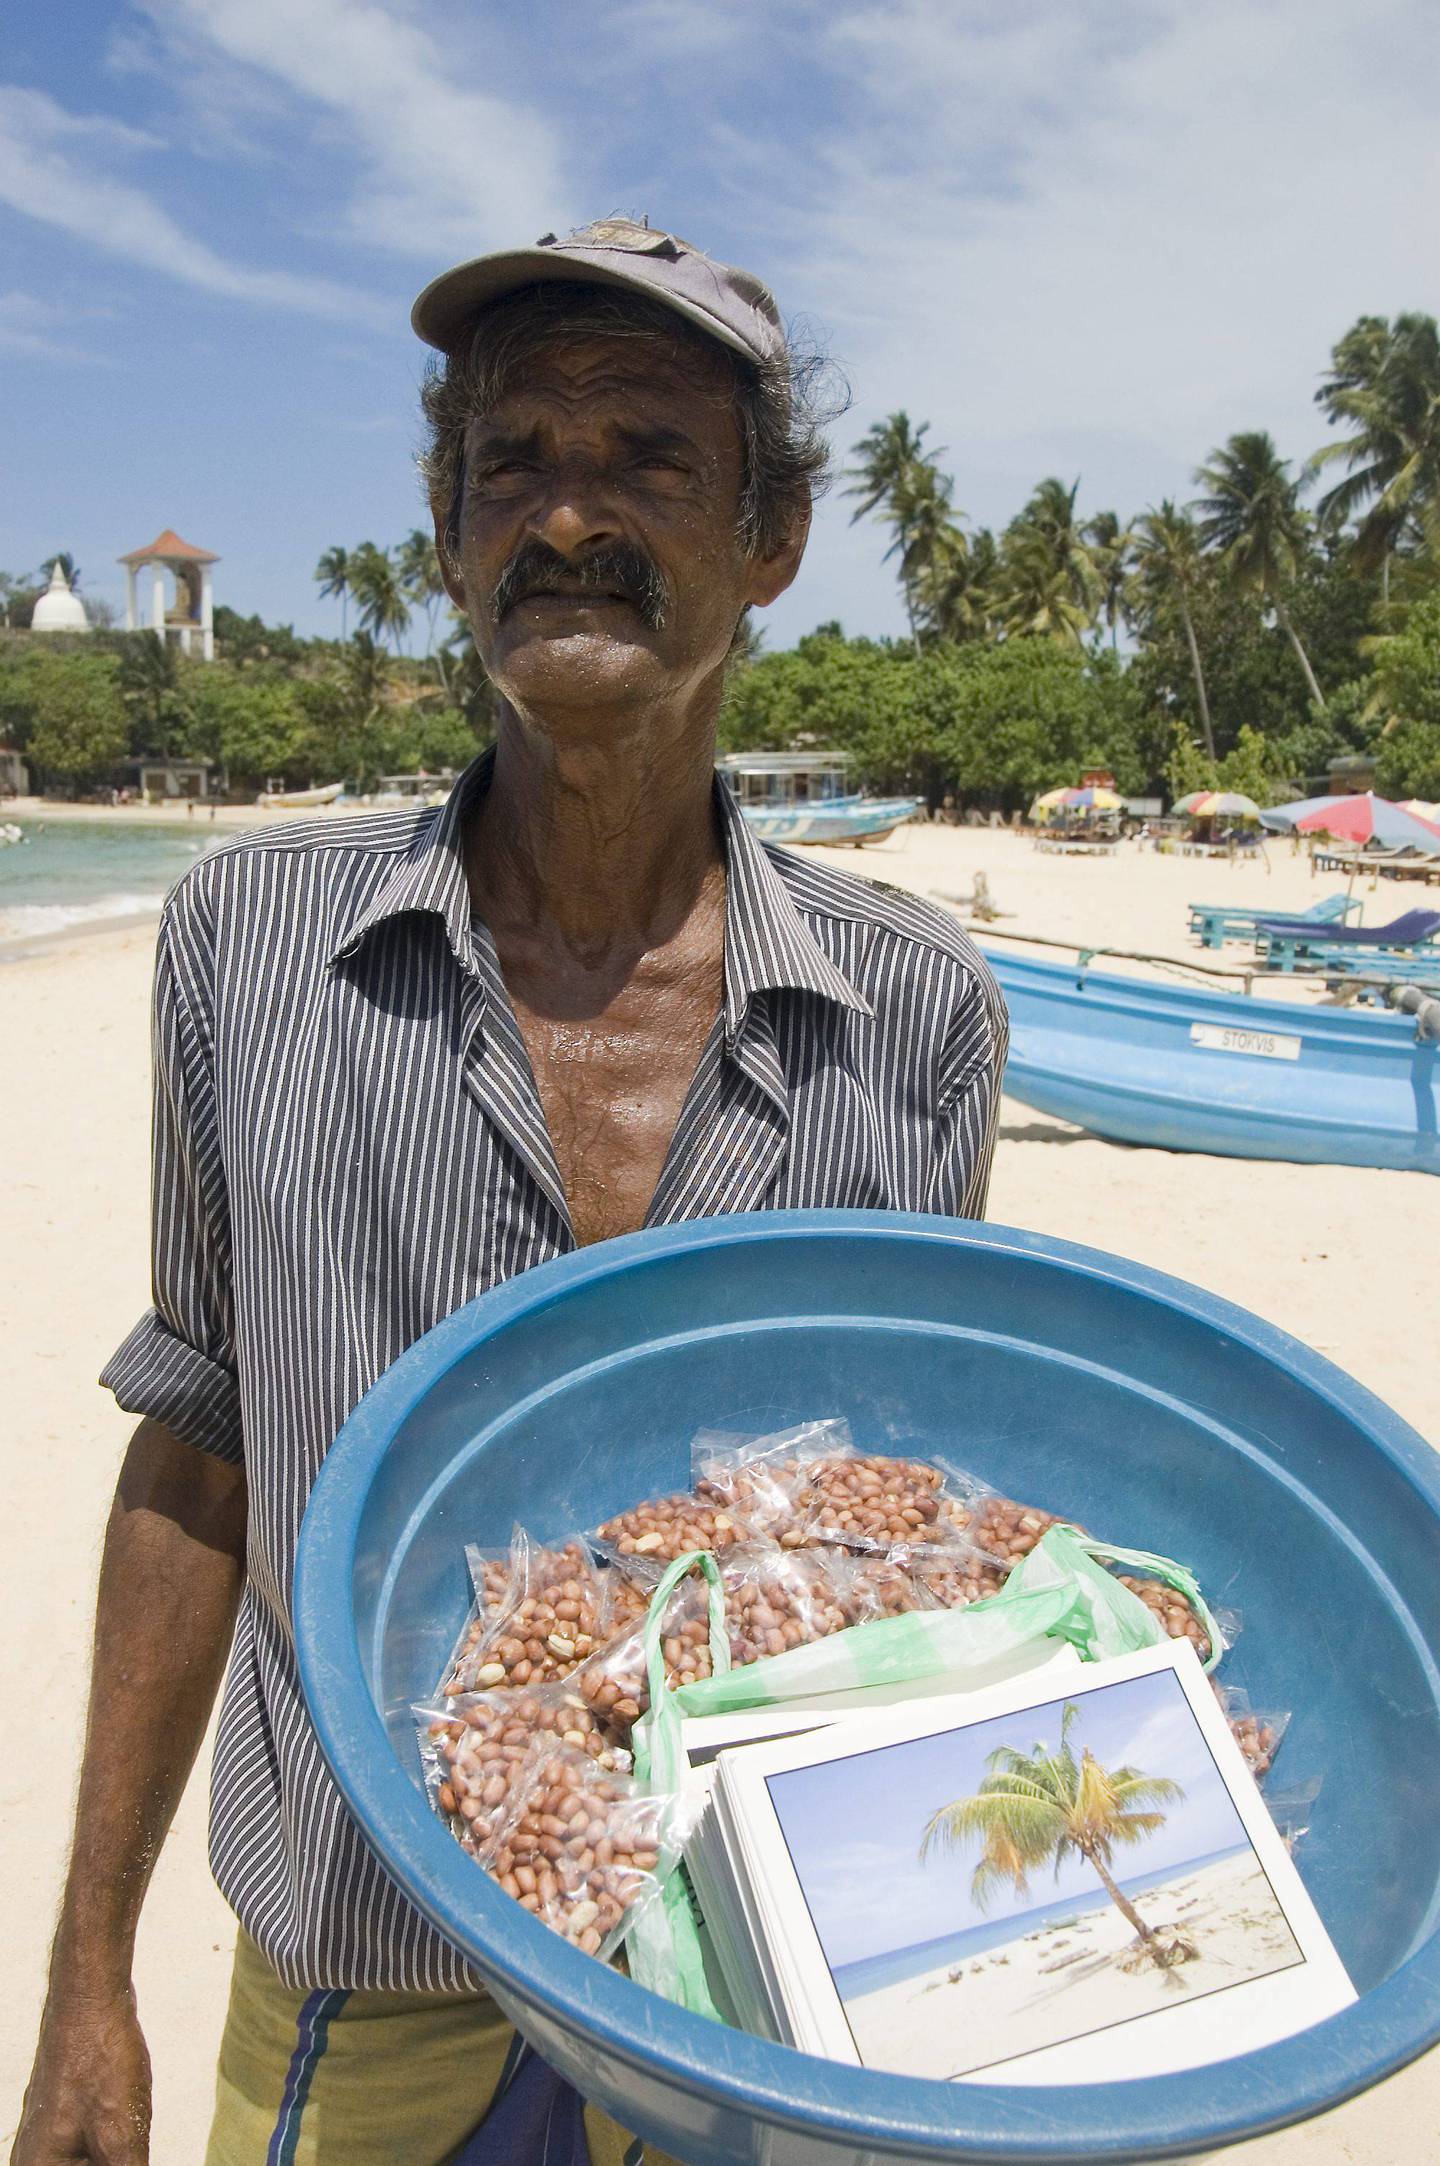 OVERLEVDE: Postkortselgeren Piyadasa Daya løp for livet da tsunamien slo inn over land for ti år siden. FOTO: VERONICA RÖNNLUND